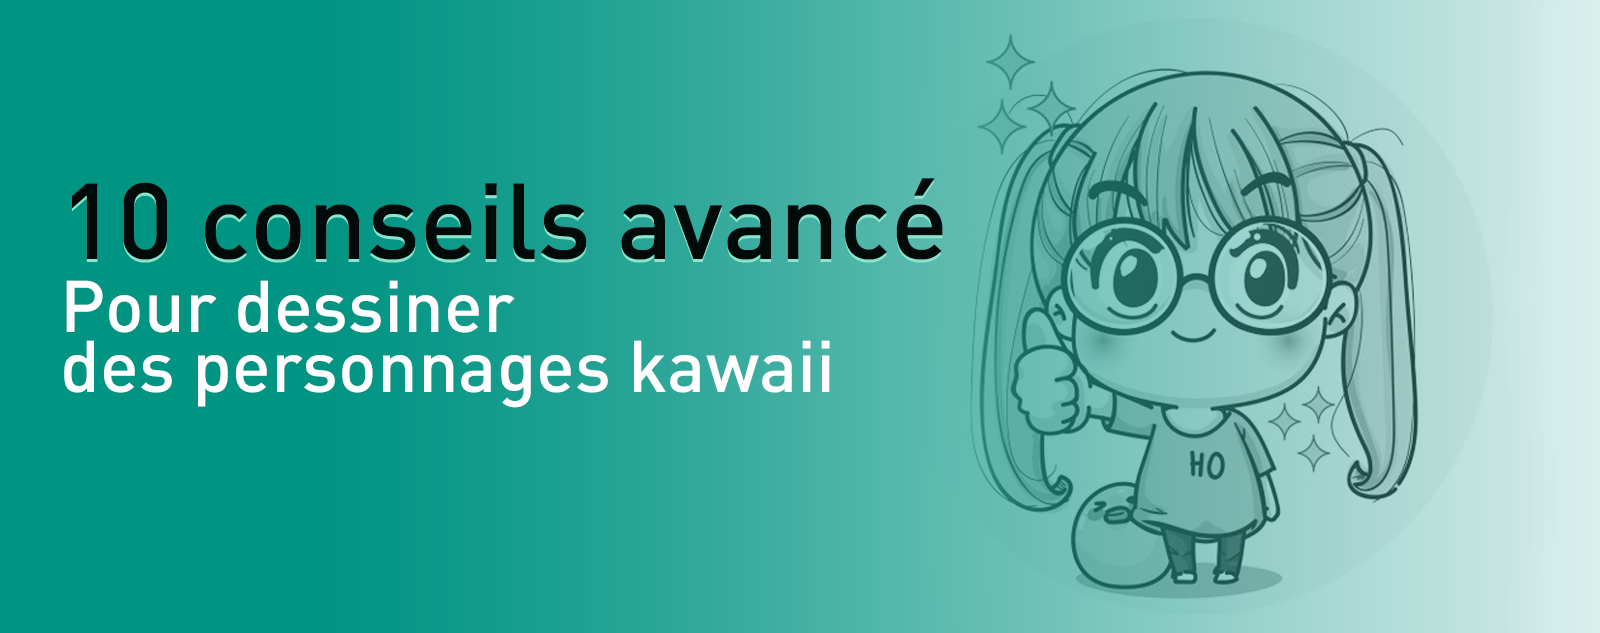 10 conseils avancé pour dessiner des personnages kawaii